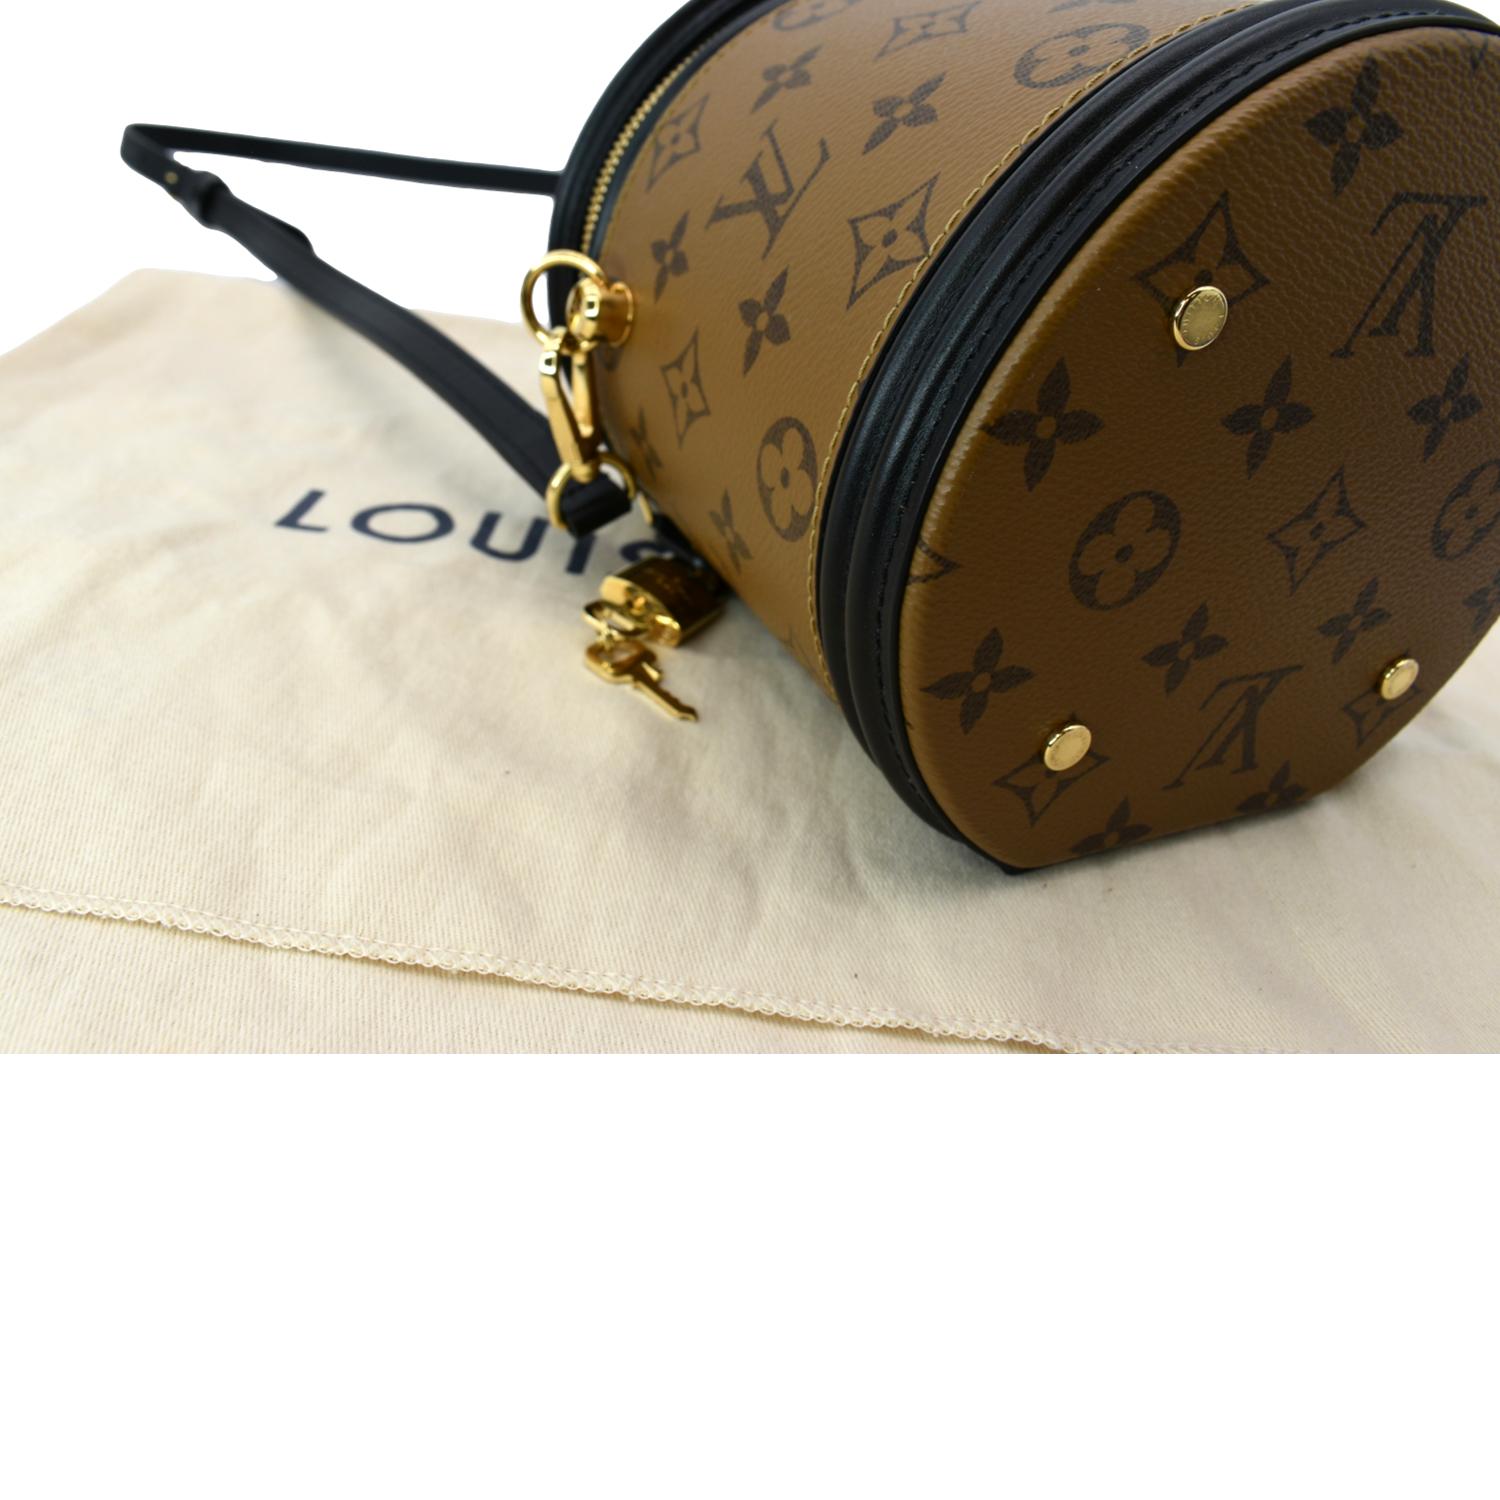 Louis Vuitton Cannes monogram reverse bag review. Cutest handbag. 